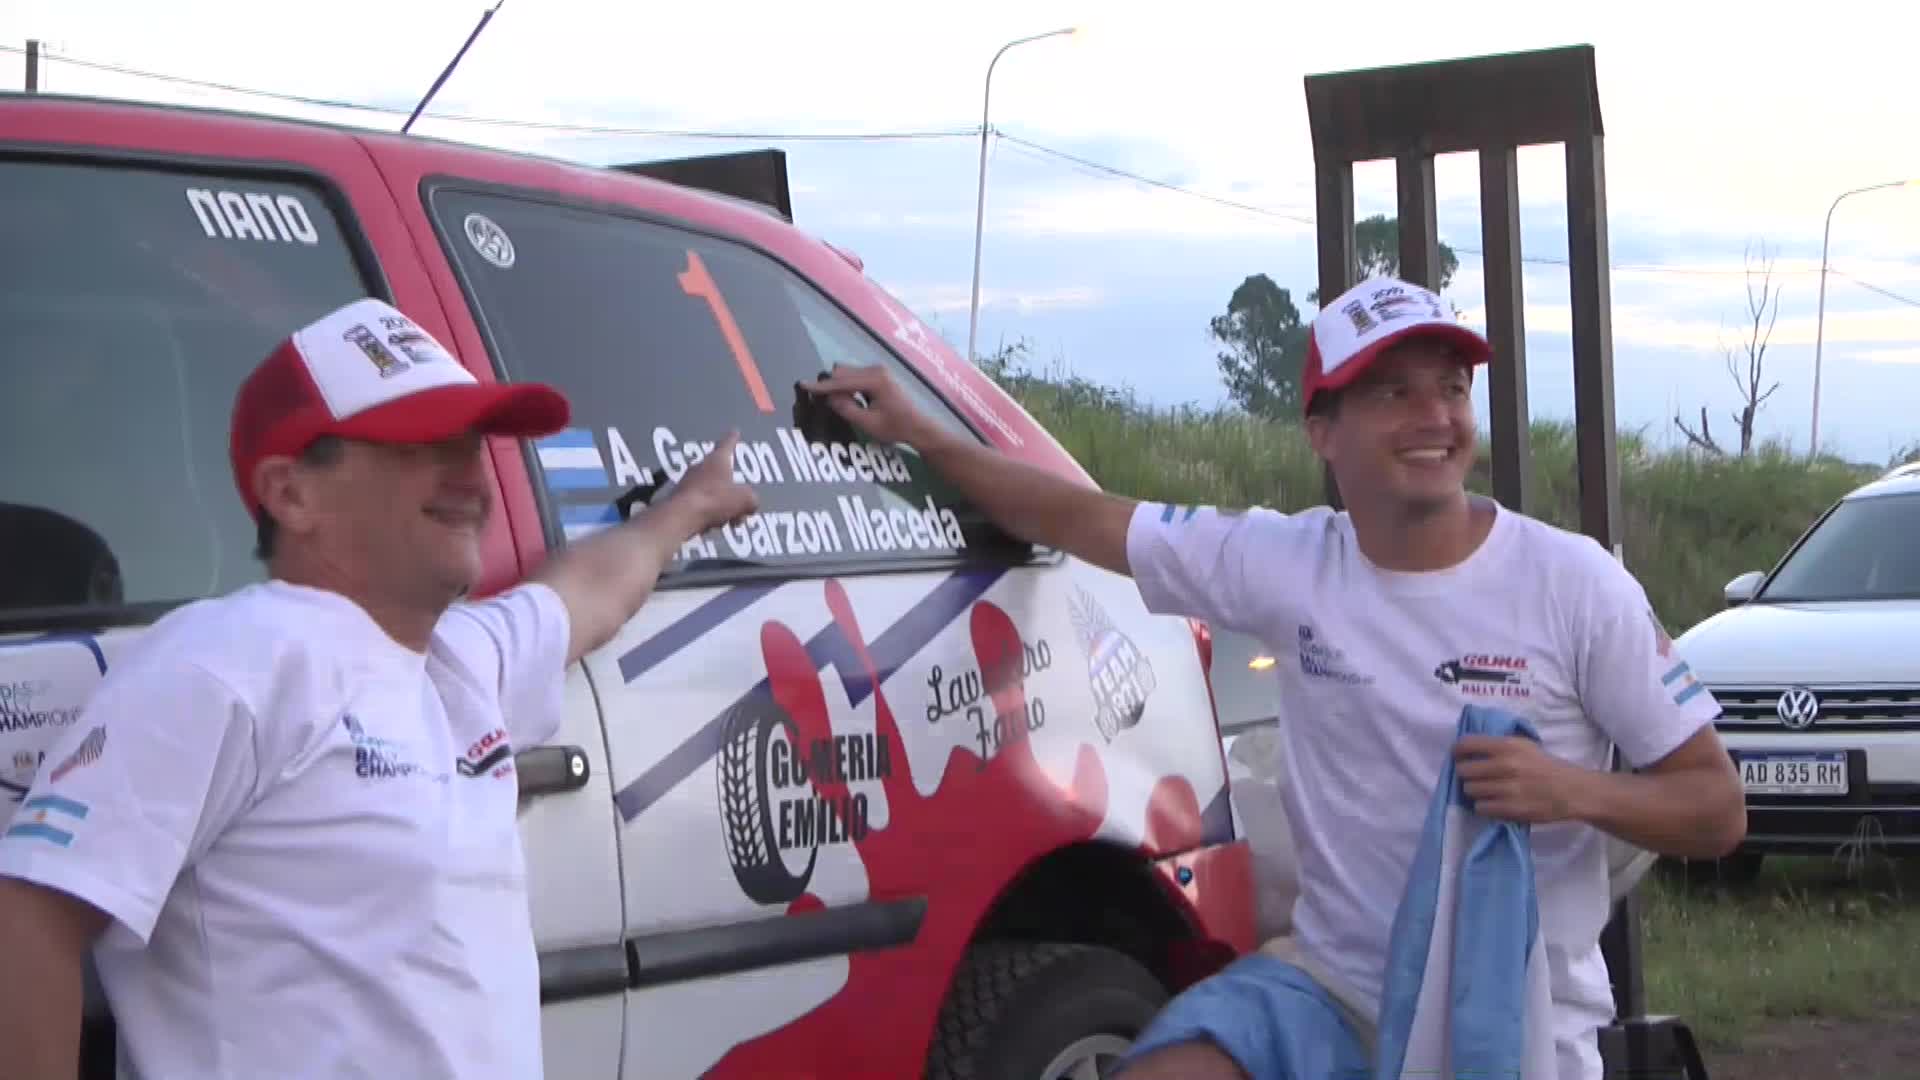 El binomio Garzón Maceda campeón del rally sudamericano